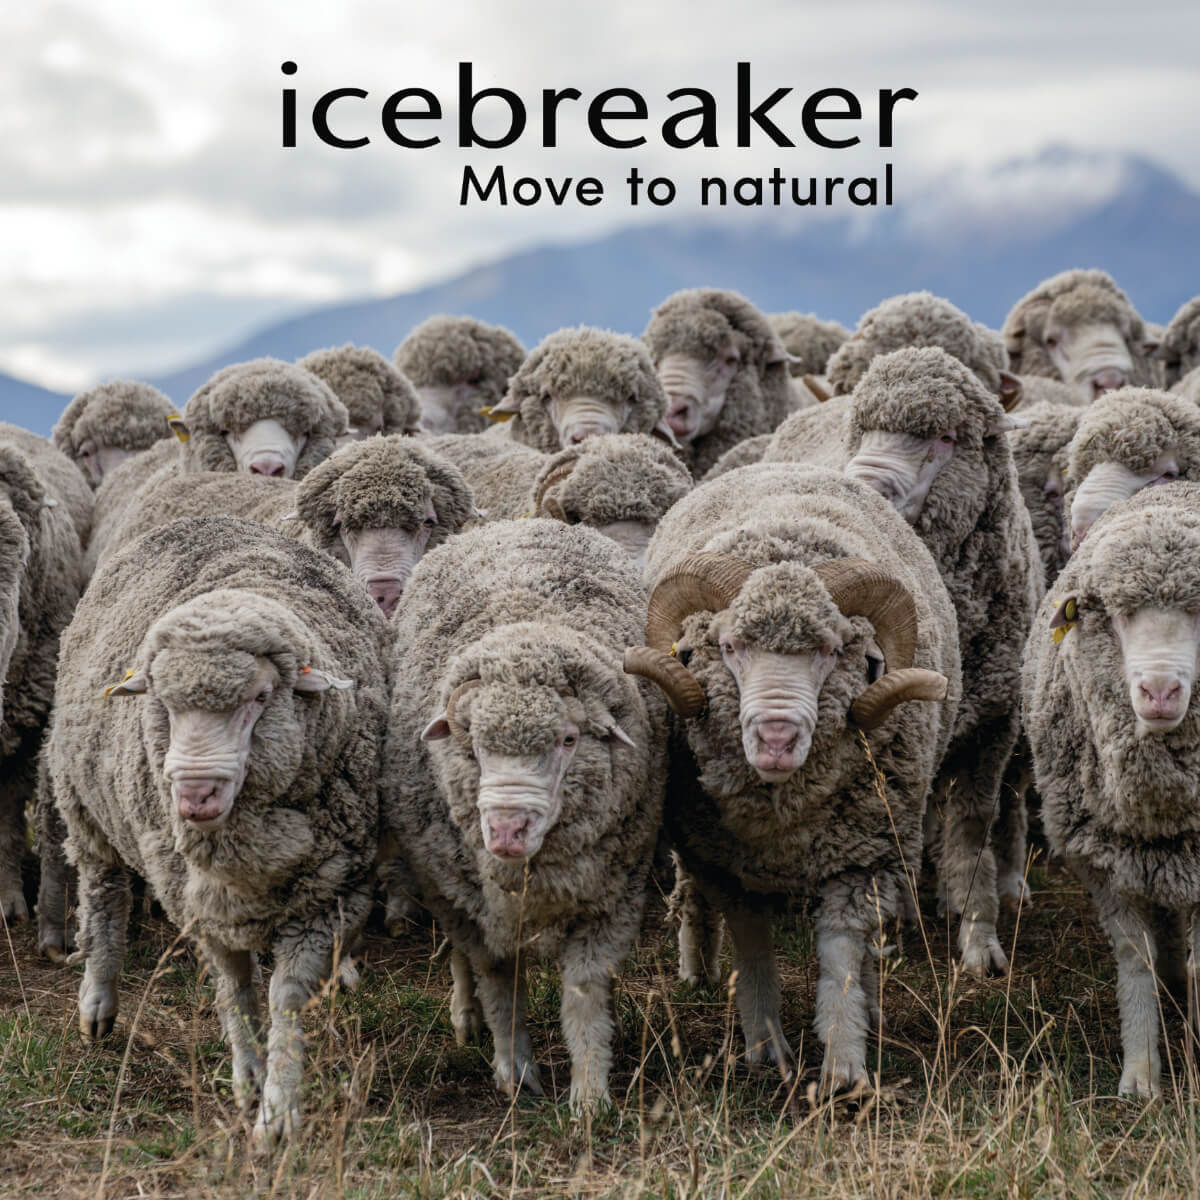 Icebreaker merino wool from sheep to shirt